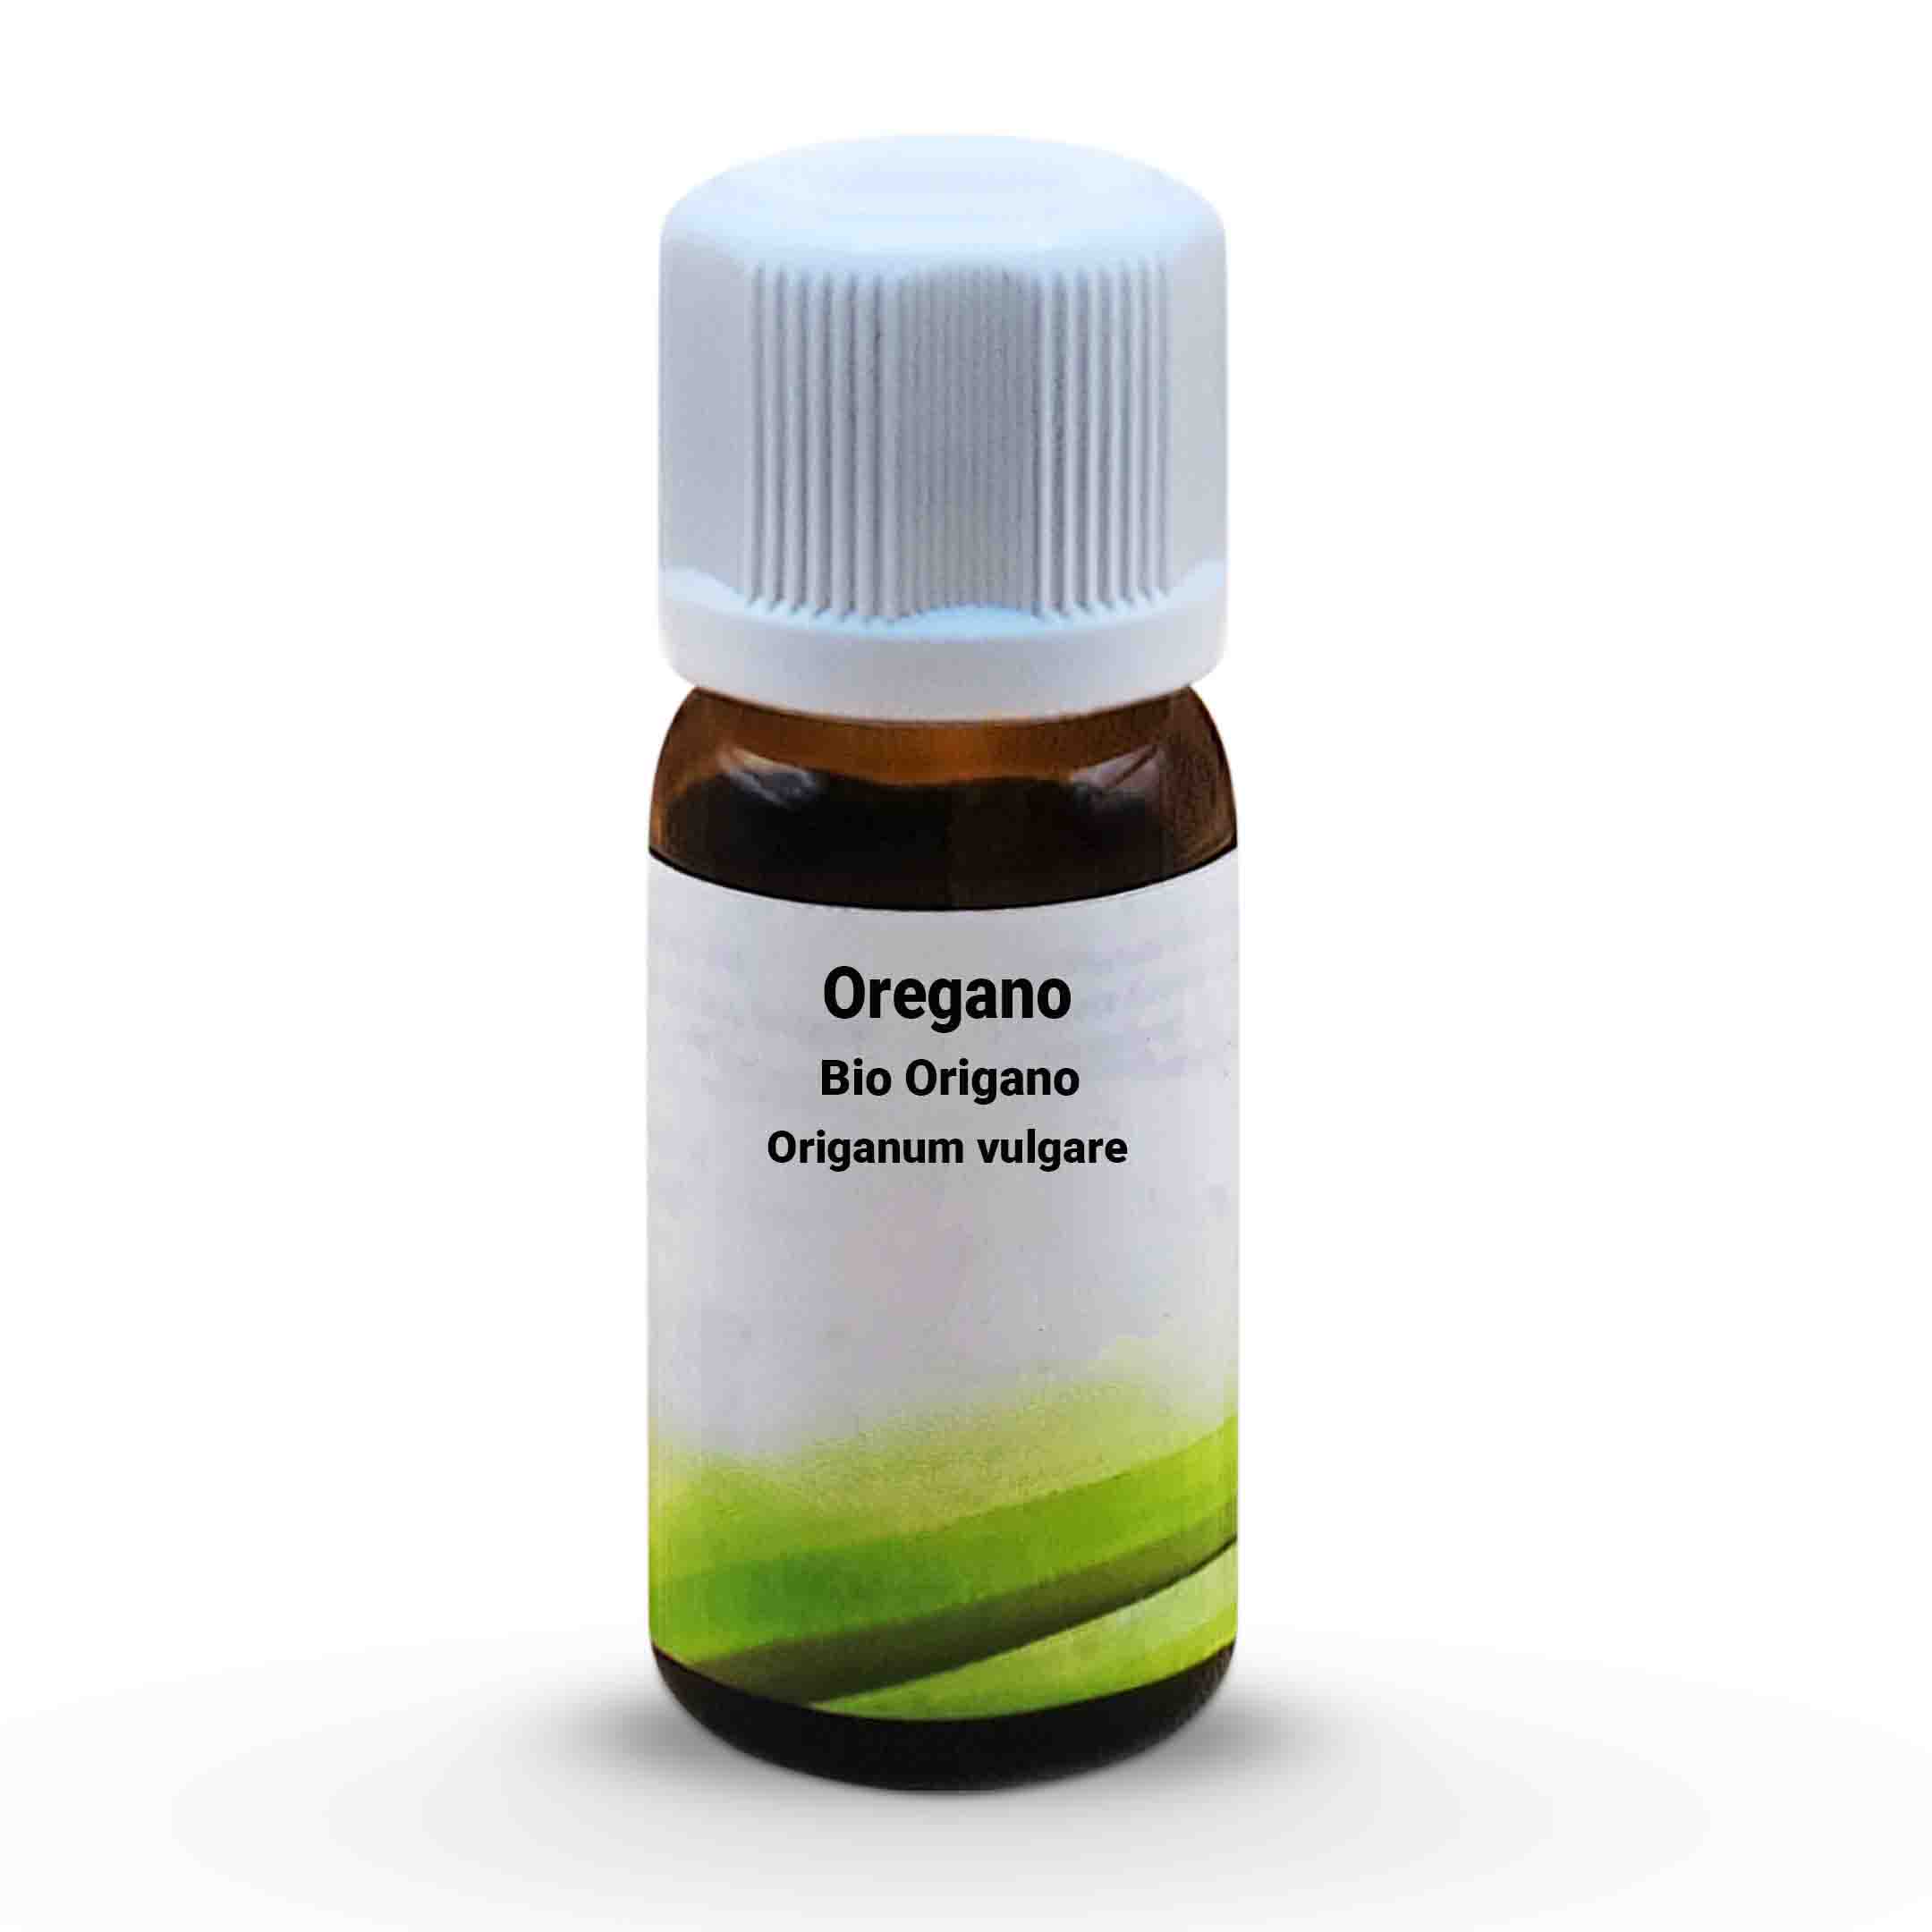 Origano  Bio Oregano - Origanum vulgare 10 ml